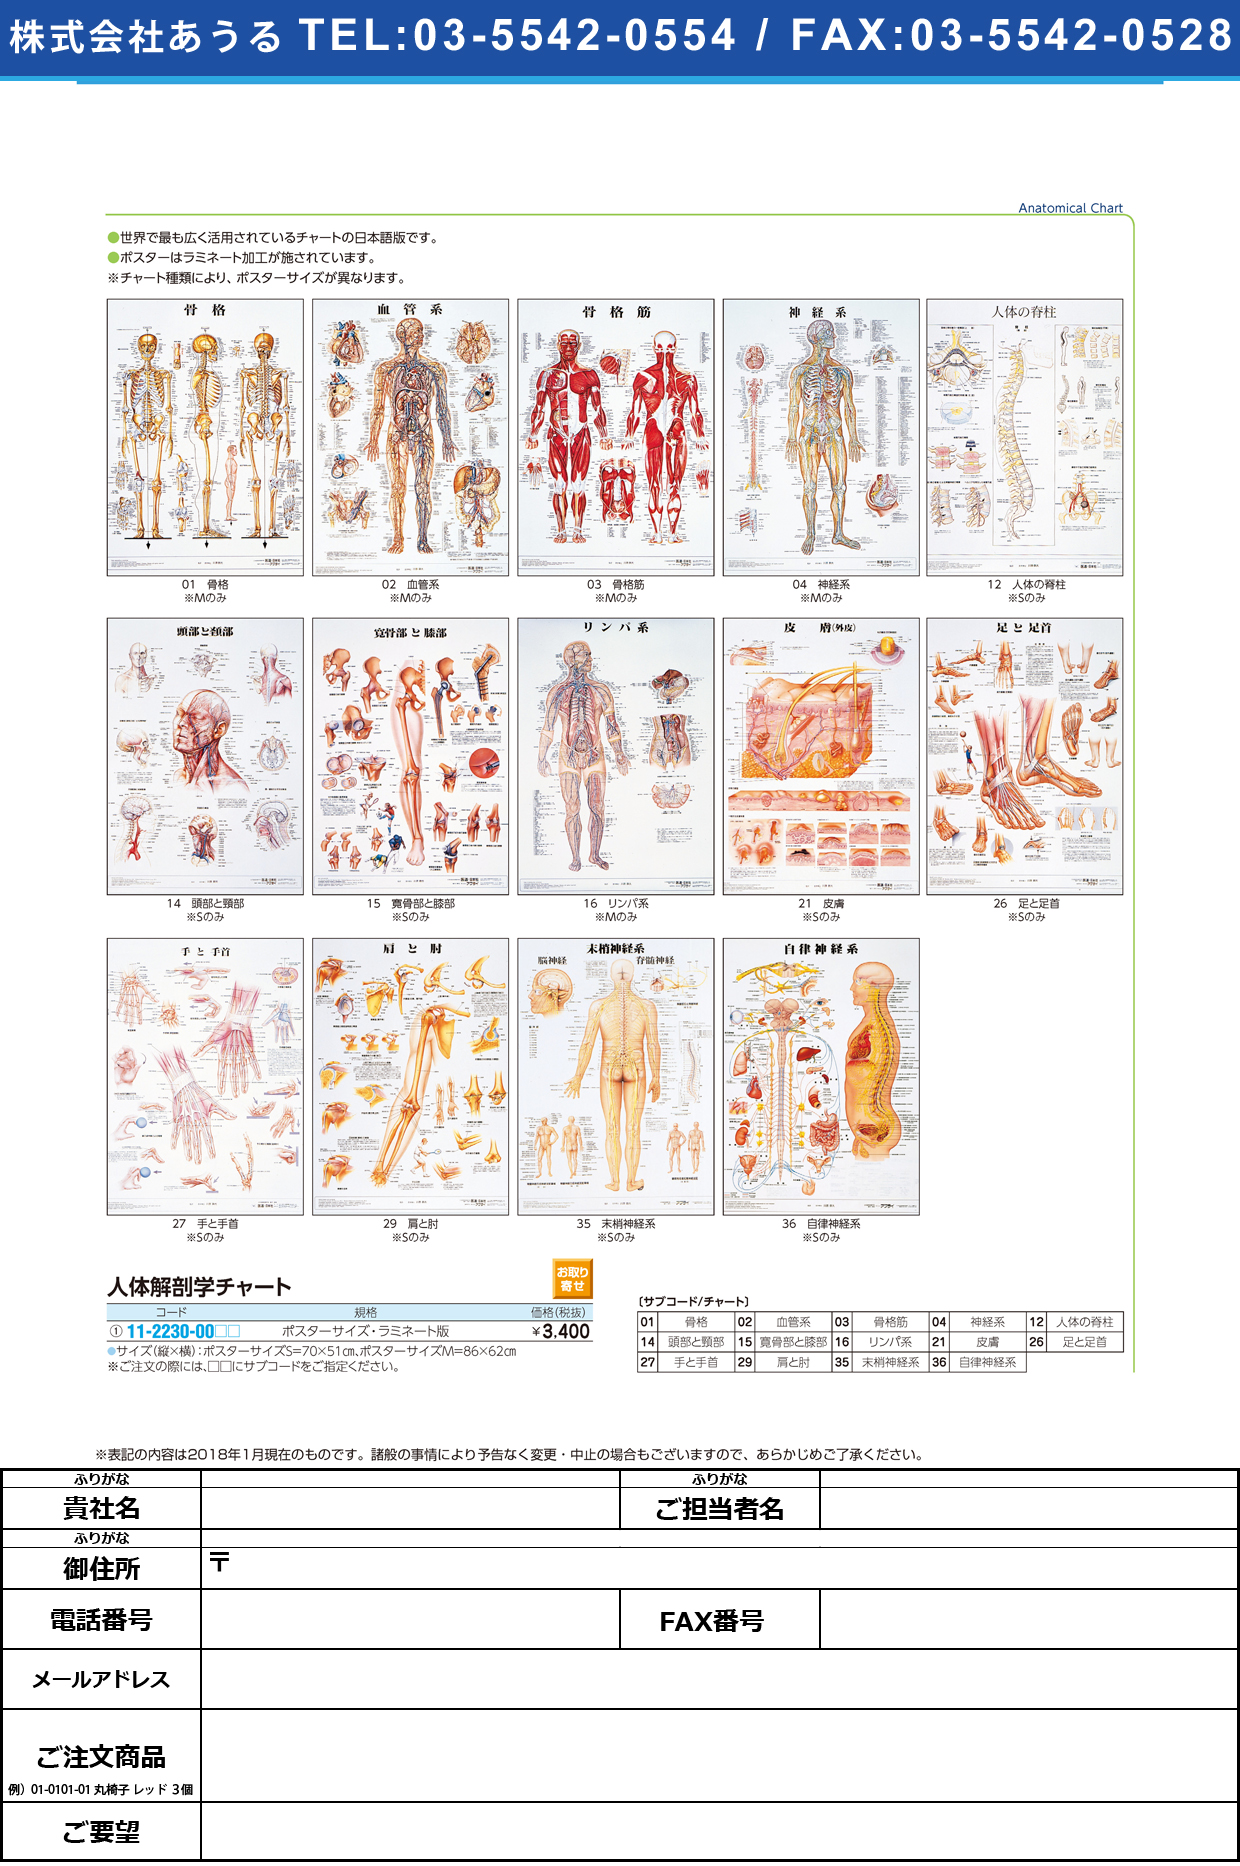 (11-2230-00)人体解剖学チャート（ポスターサイズ） ﾗﾐﾈｰﾄﾊﾞﾝ ｼﾞﾝﾀｲｶｲﾎﾞｳｶﾞｸﾁｬｰﾄ 肩と肘Ｓ(京都科学)【1枚単位】【2019年カタログ商品】